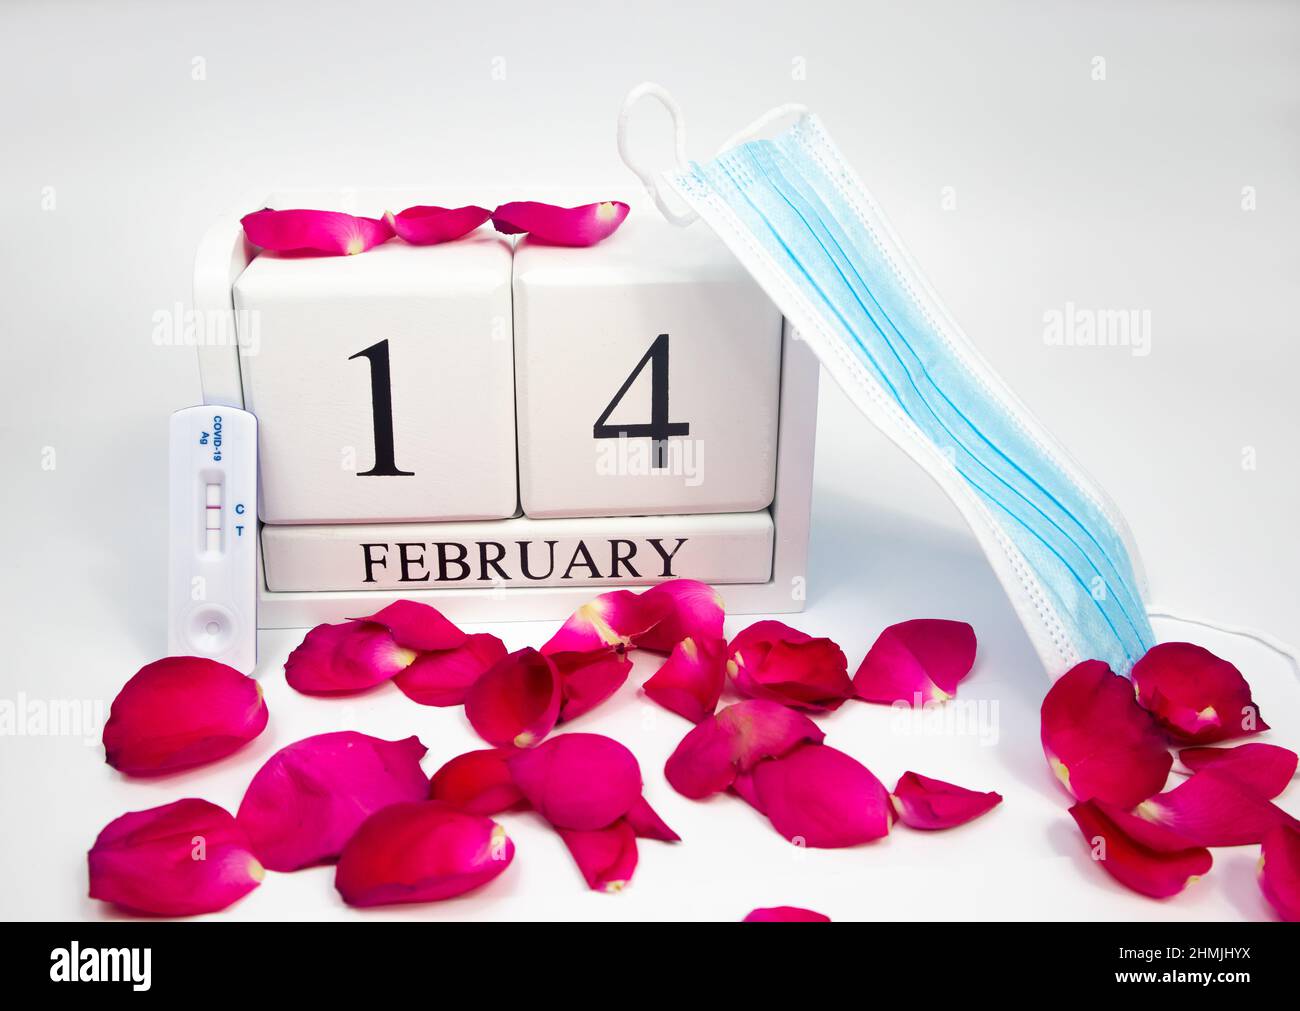 Februar 14 weißer Holzkalender auf weißem Hintergrund mit roten Rosenblättern. Neben ihm befindet sich eine medizinische Maske und ein positiver Covidtest Stockfoto